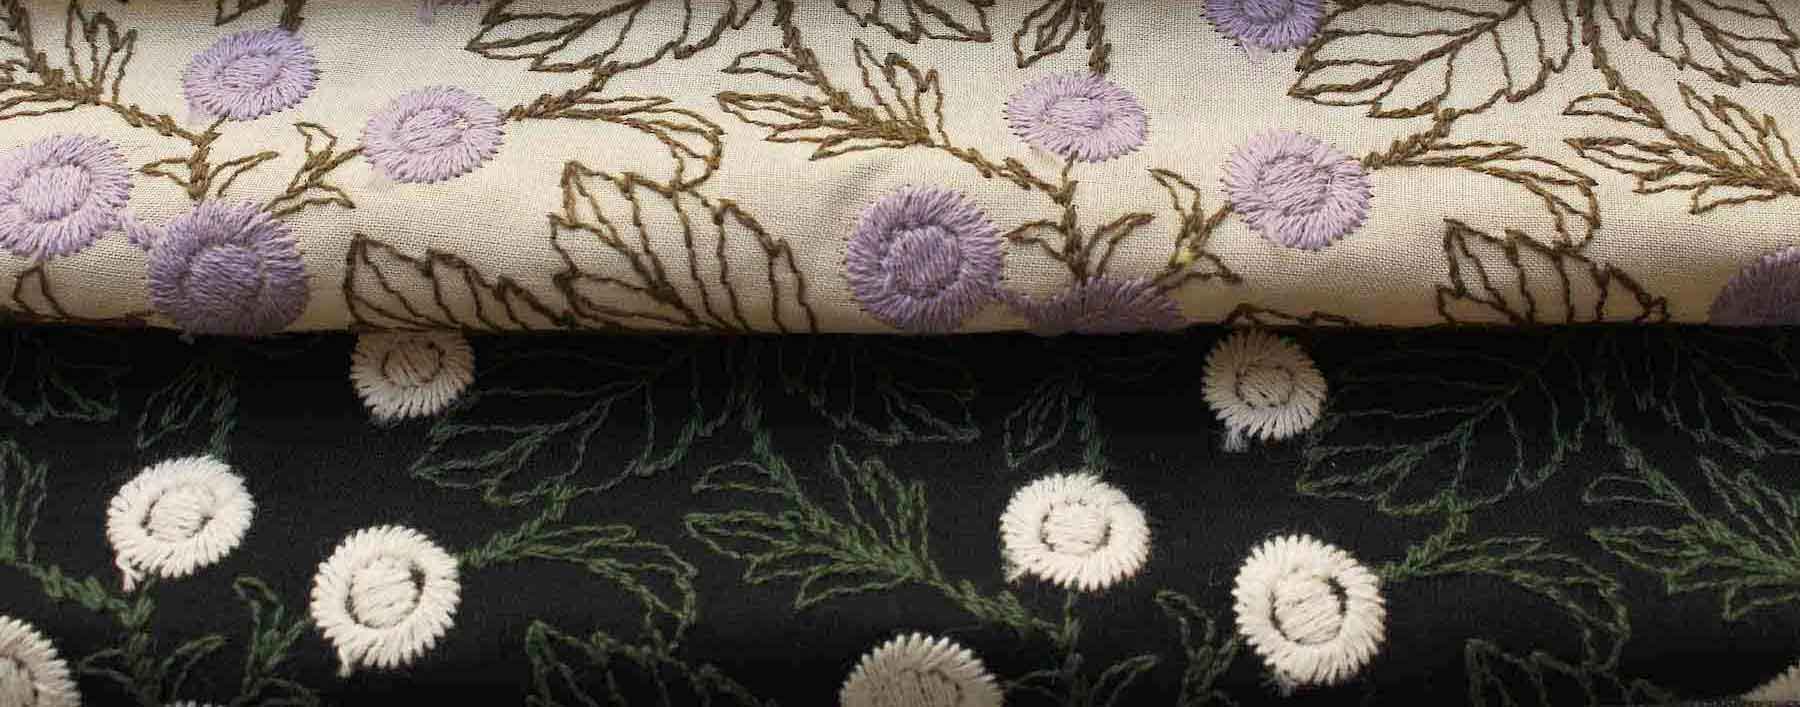 Jcコットン刺繍花柄-丸い花